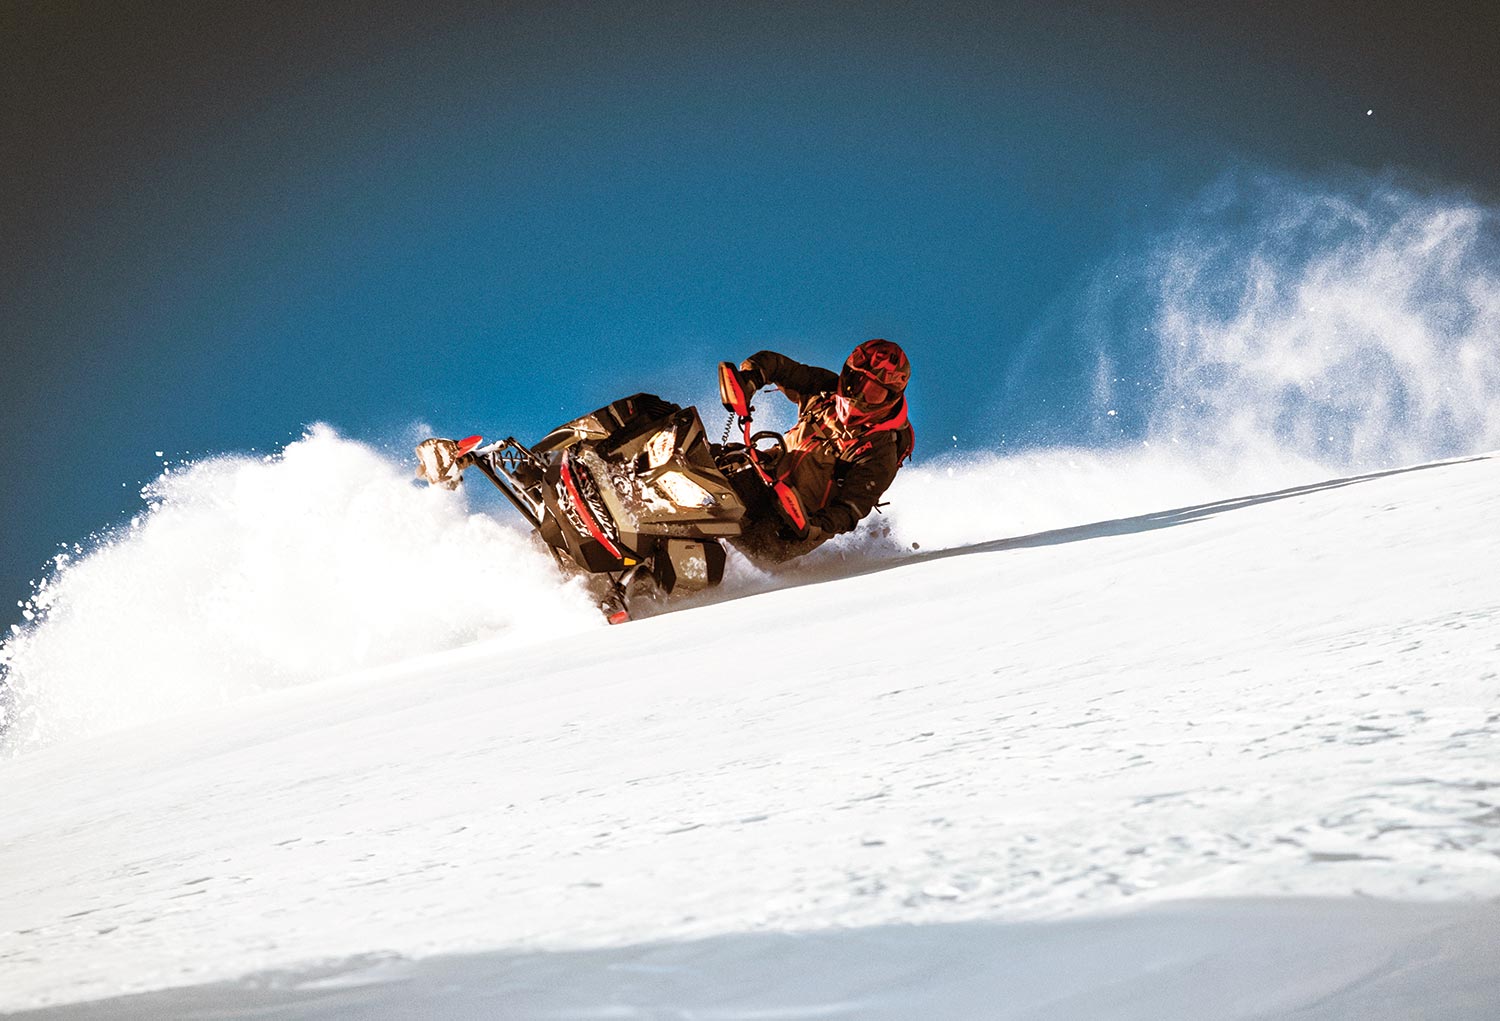 Man riding the 2022 Ski Doo down a hill